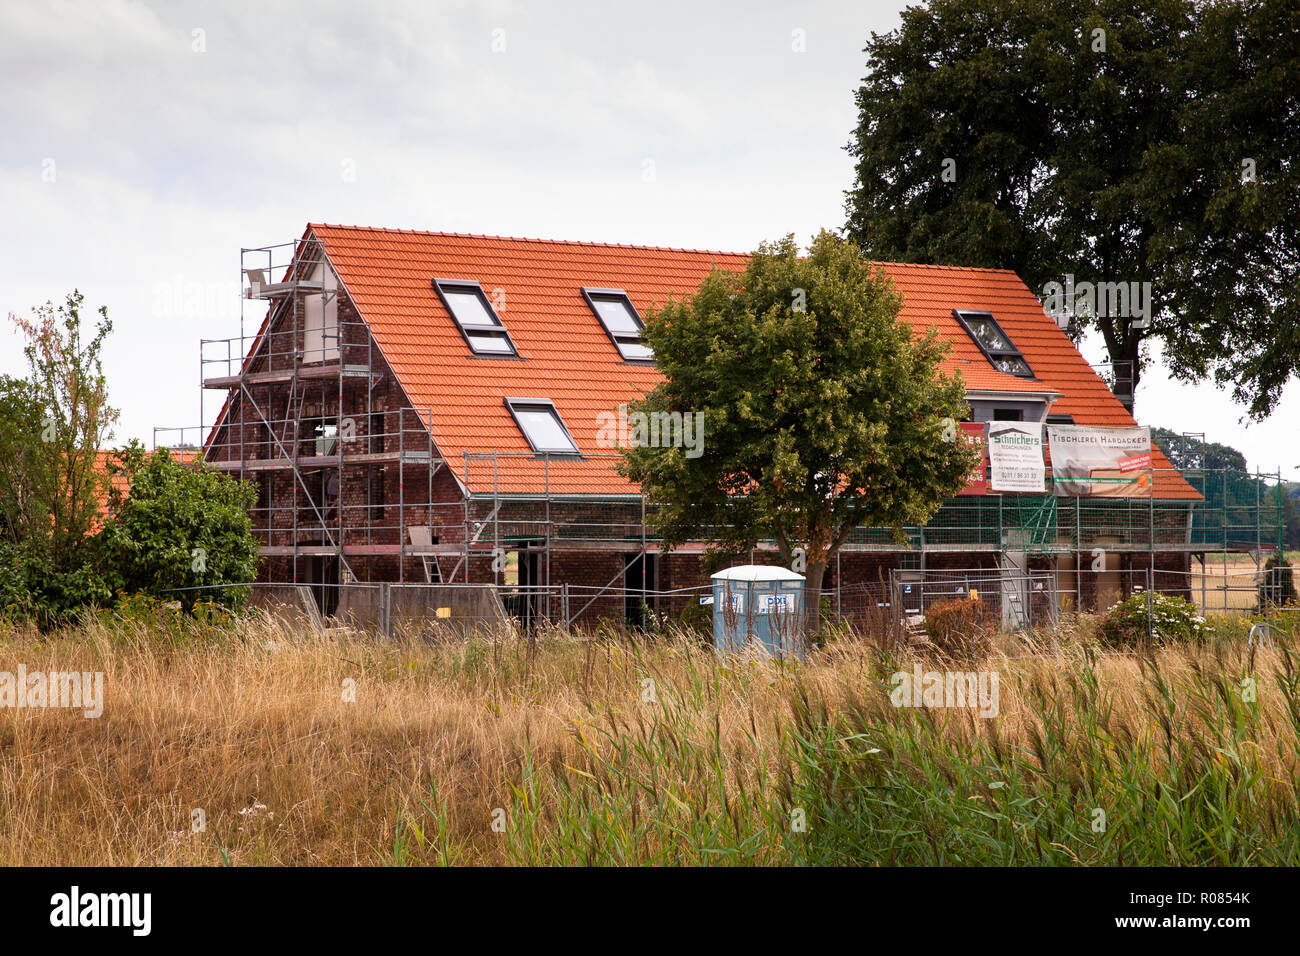 reconstruction of an old farmhouse to a residential house, Wesel, Germany.  Umbau eines alten Bauernhauses zu einem Wohnhaus, Wesel, Deutschland. Stock Photo